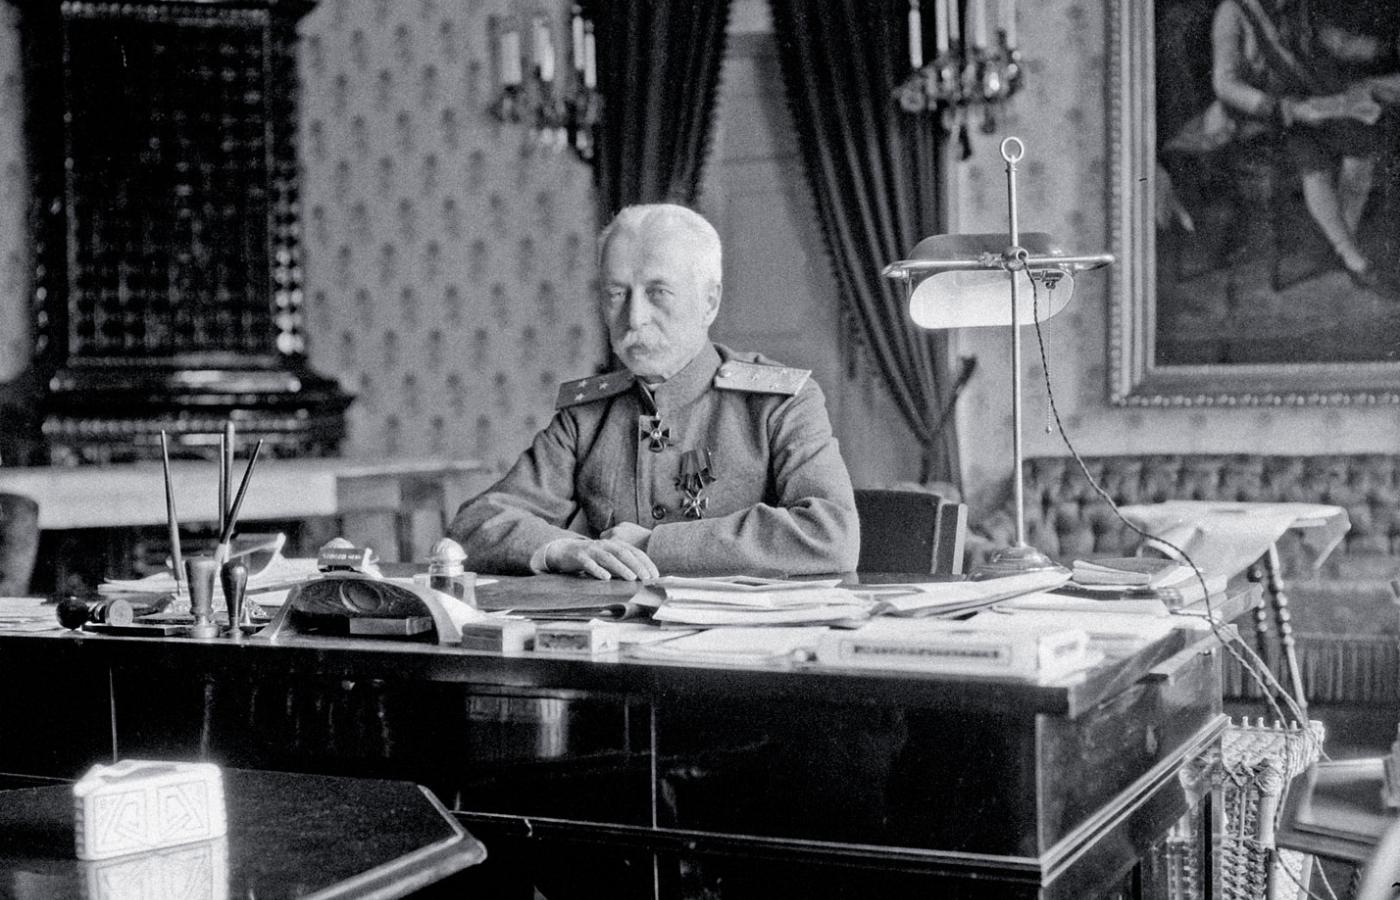 Gubernator okupowanej przez Rosjan Galicji, hrabia Gieorgij Bobrinski, październik 1914 r.